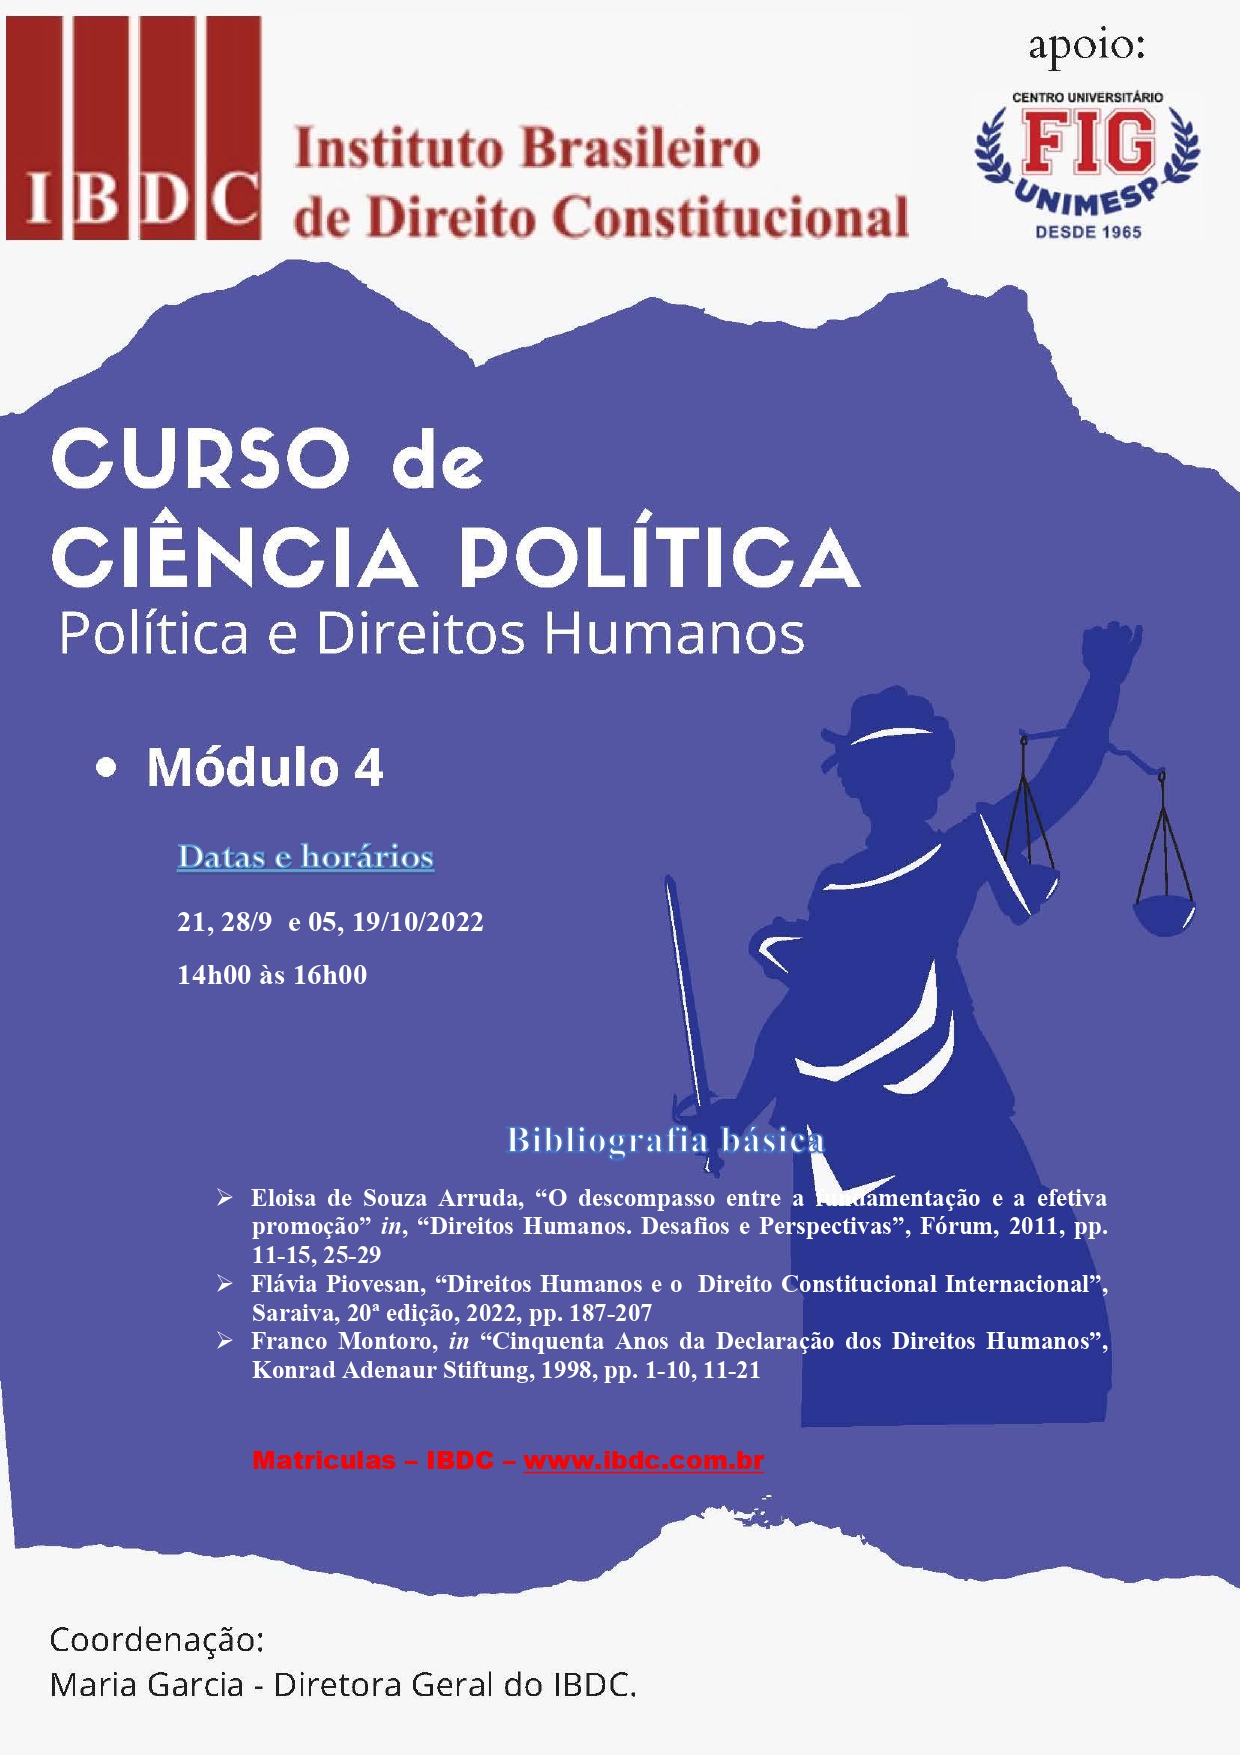 CURSO-DE-POLÍTICA-IBDC-MÓDULO-4-POLÍTICA-E-DIREITOS-HUMANOS_page-0001.jpg